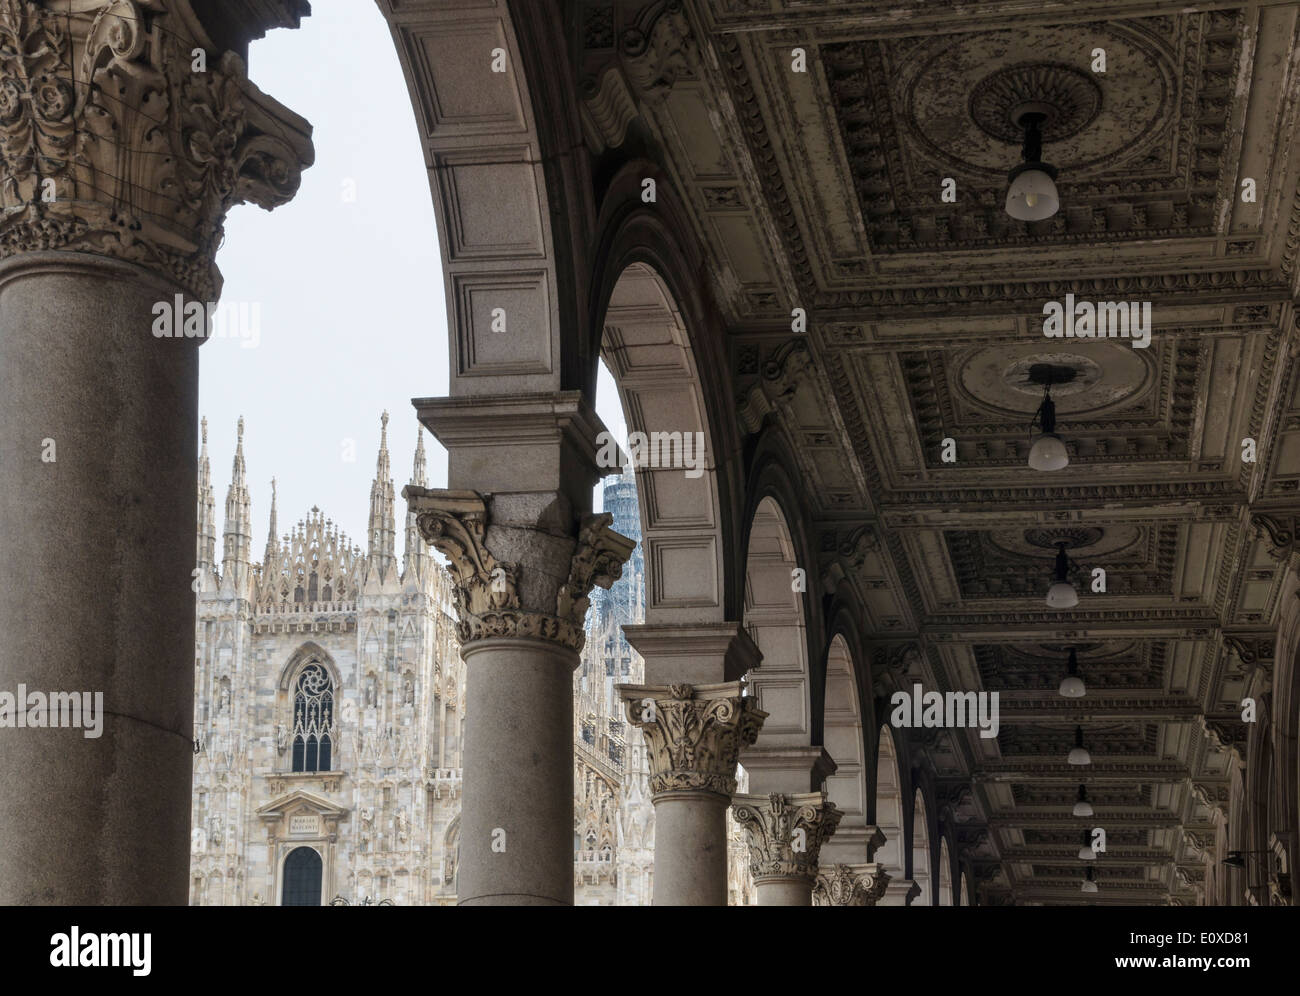 The Duomo di Milano as seen through the arches of Piazza del Duomo, Milan, Italy Stock Photo